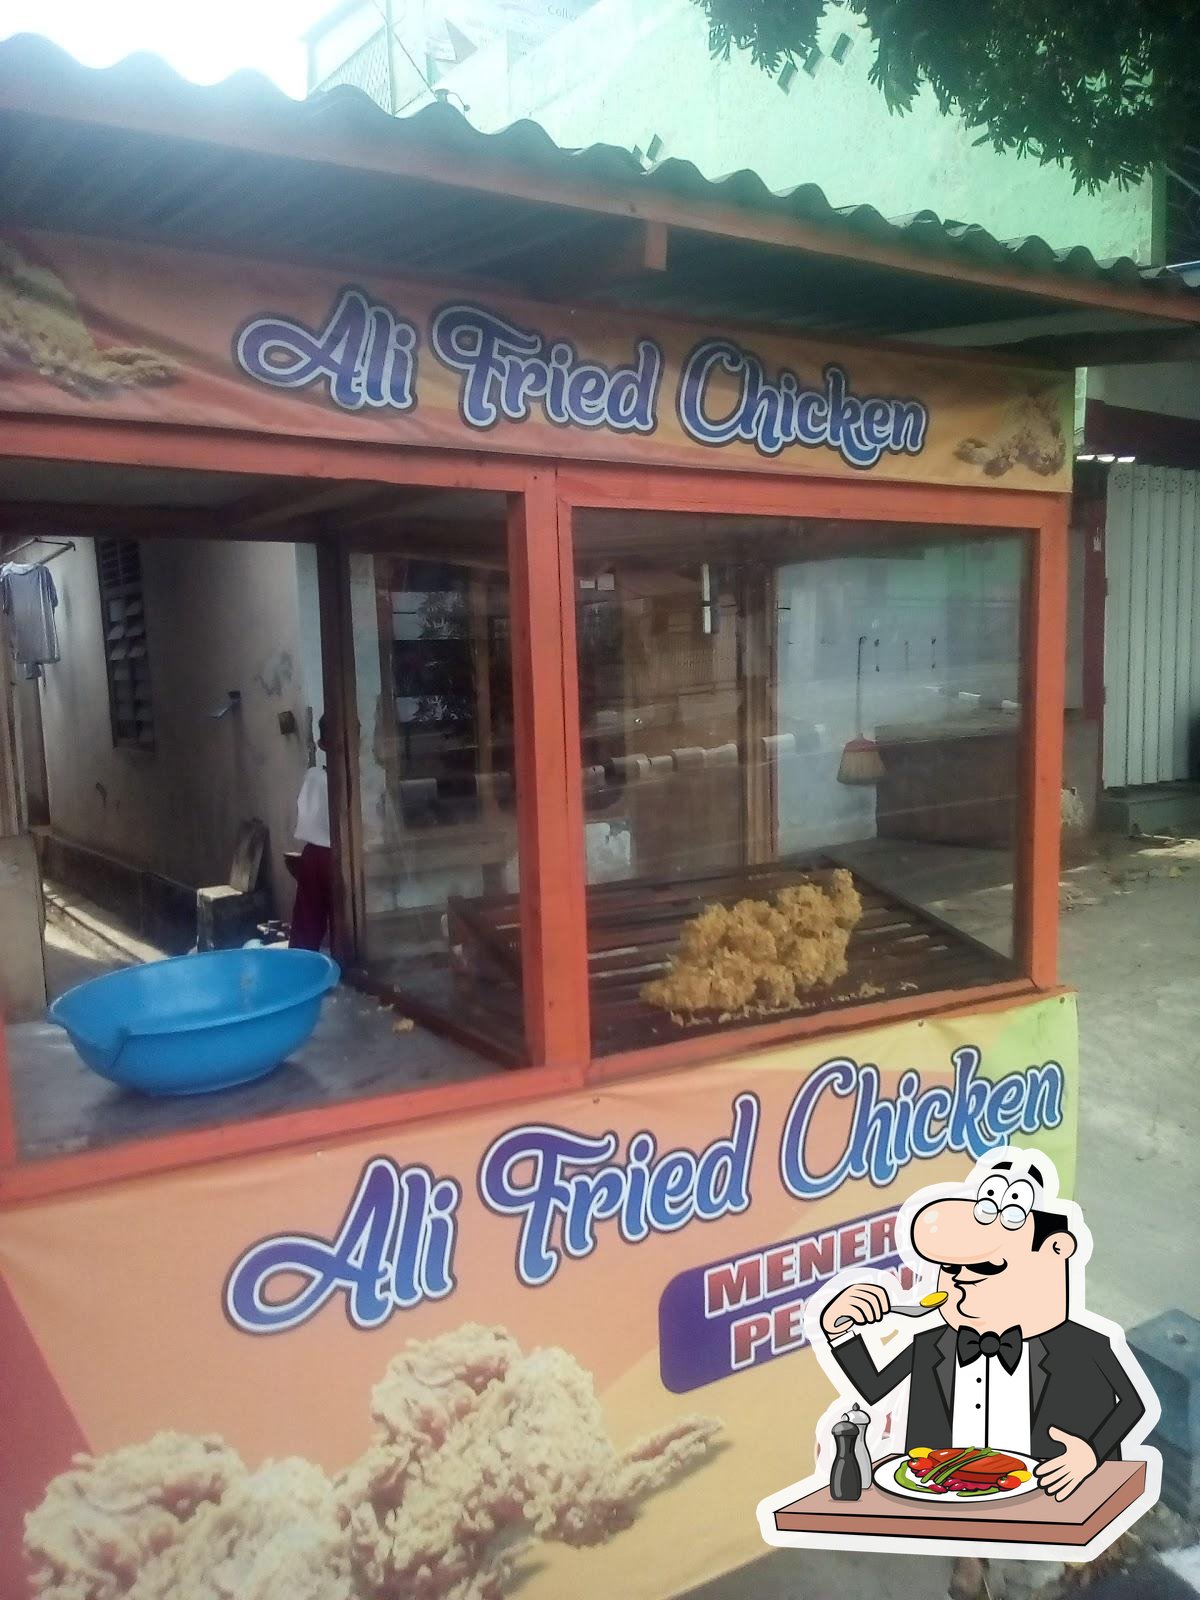 Alis fried chicken